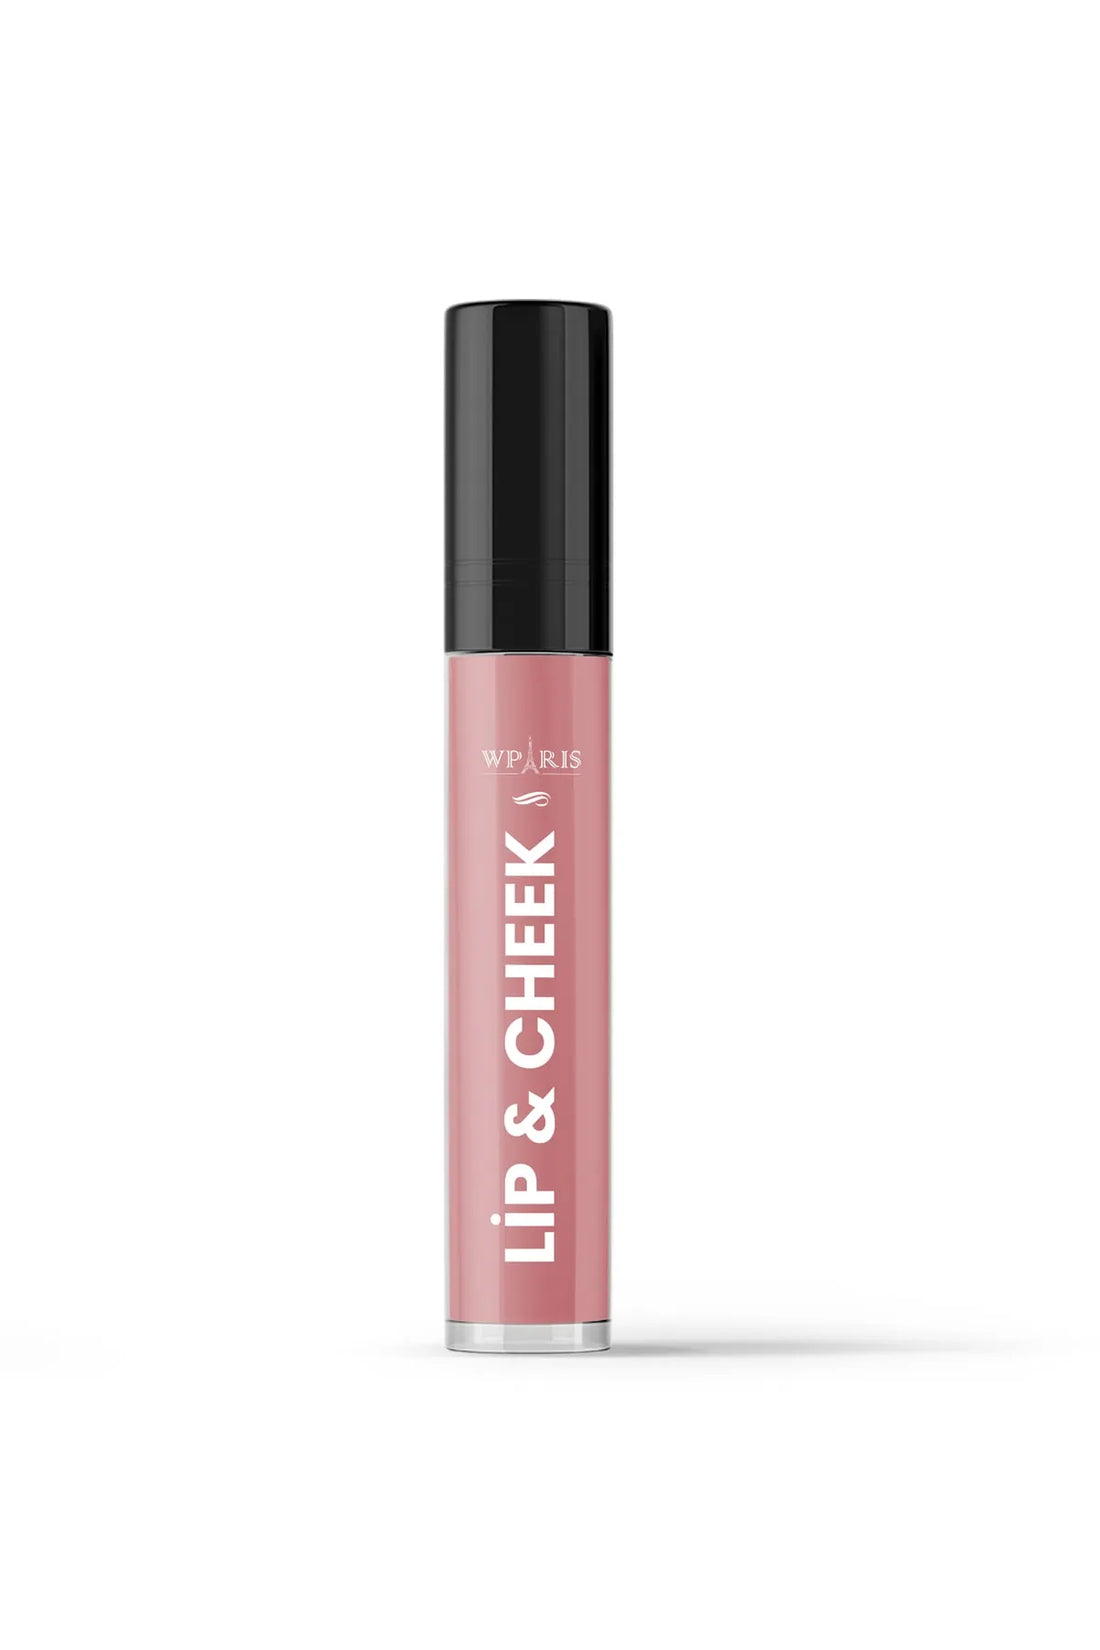 WParis Liquid Blush&amp;amp;lipstick&amp;amp;eye shadow- 3in1 Lip&amp;amp;cheek No:2 Peach (PEACH) 